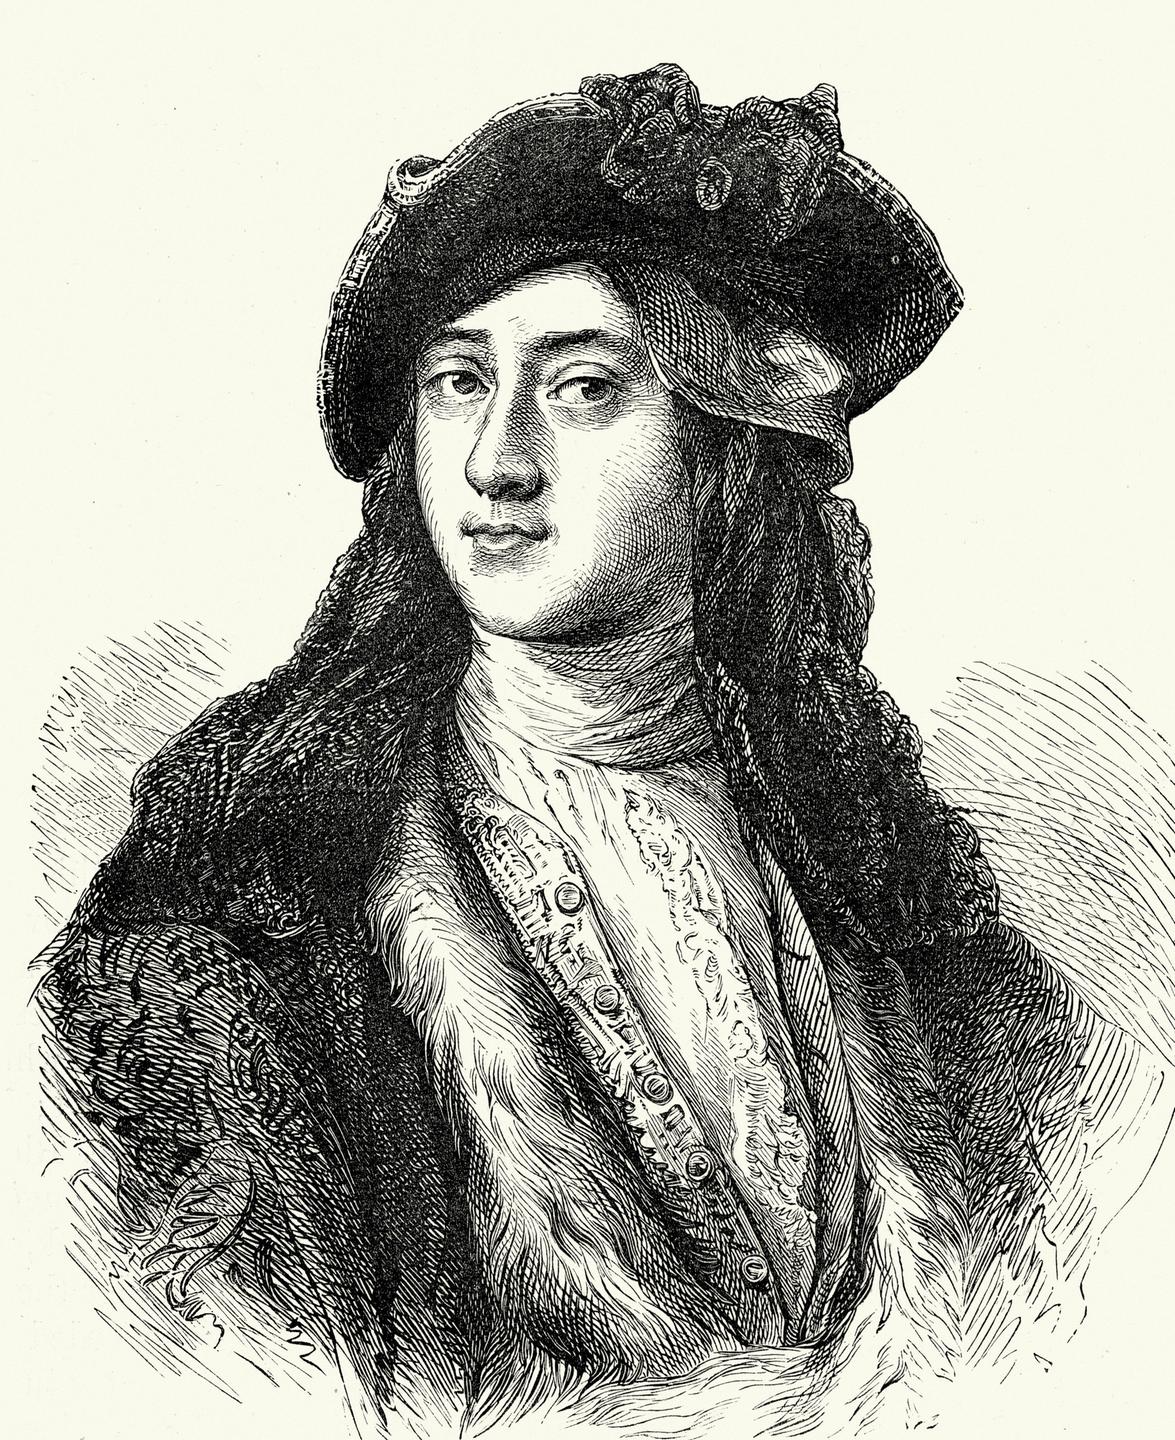 Porträtzeichnung von Horace Walpole in schwarz vor weissem Hintergrund.